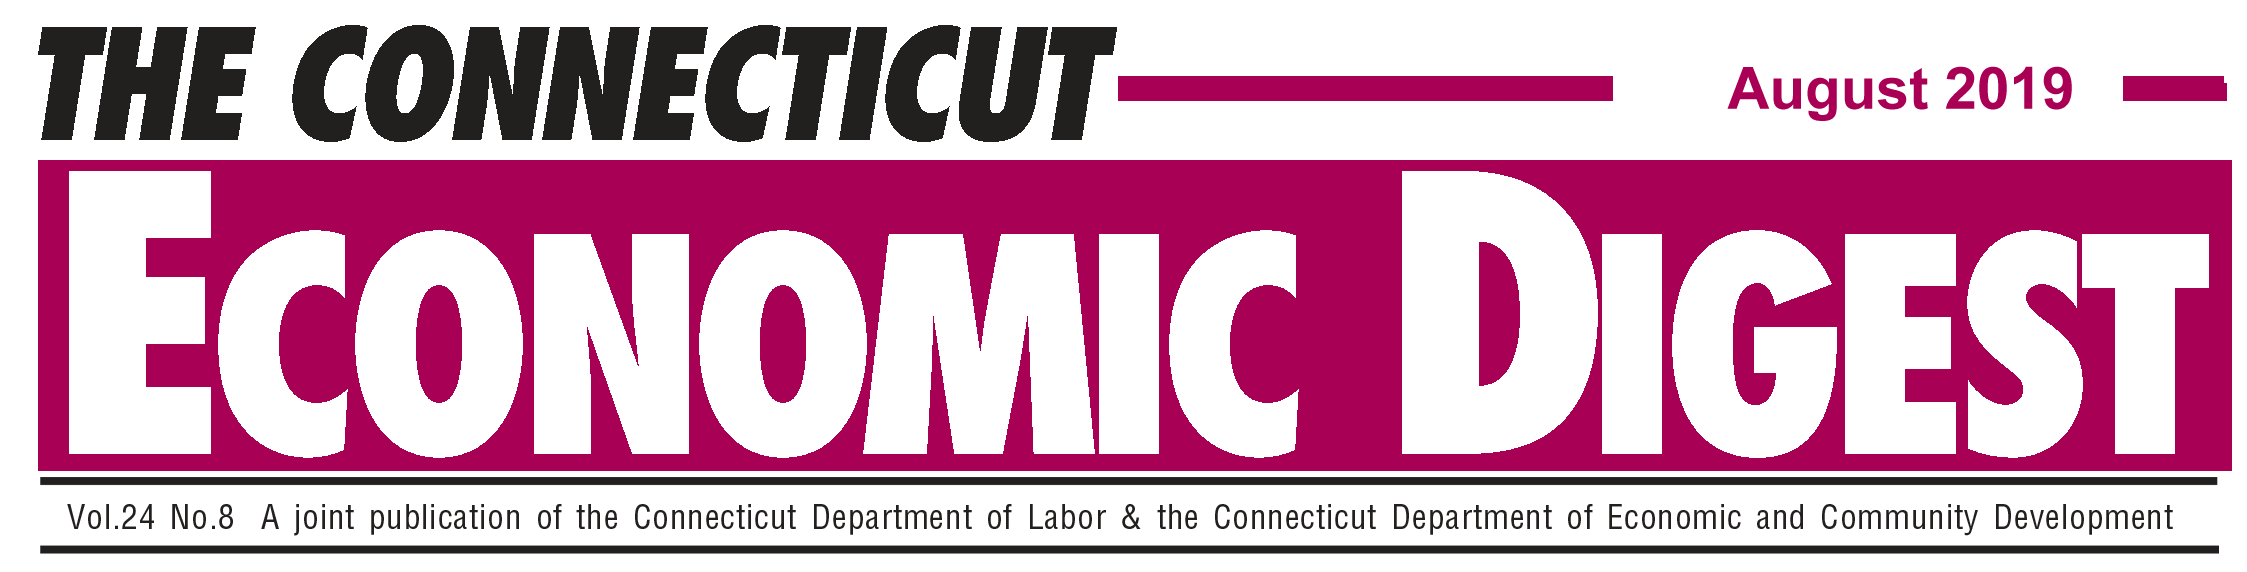 August 2019 Connecticut Economic Digest